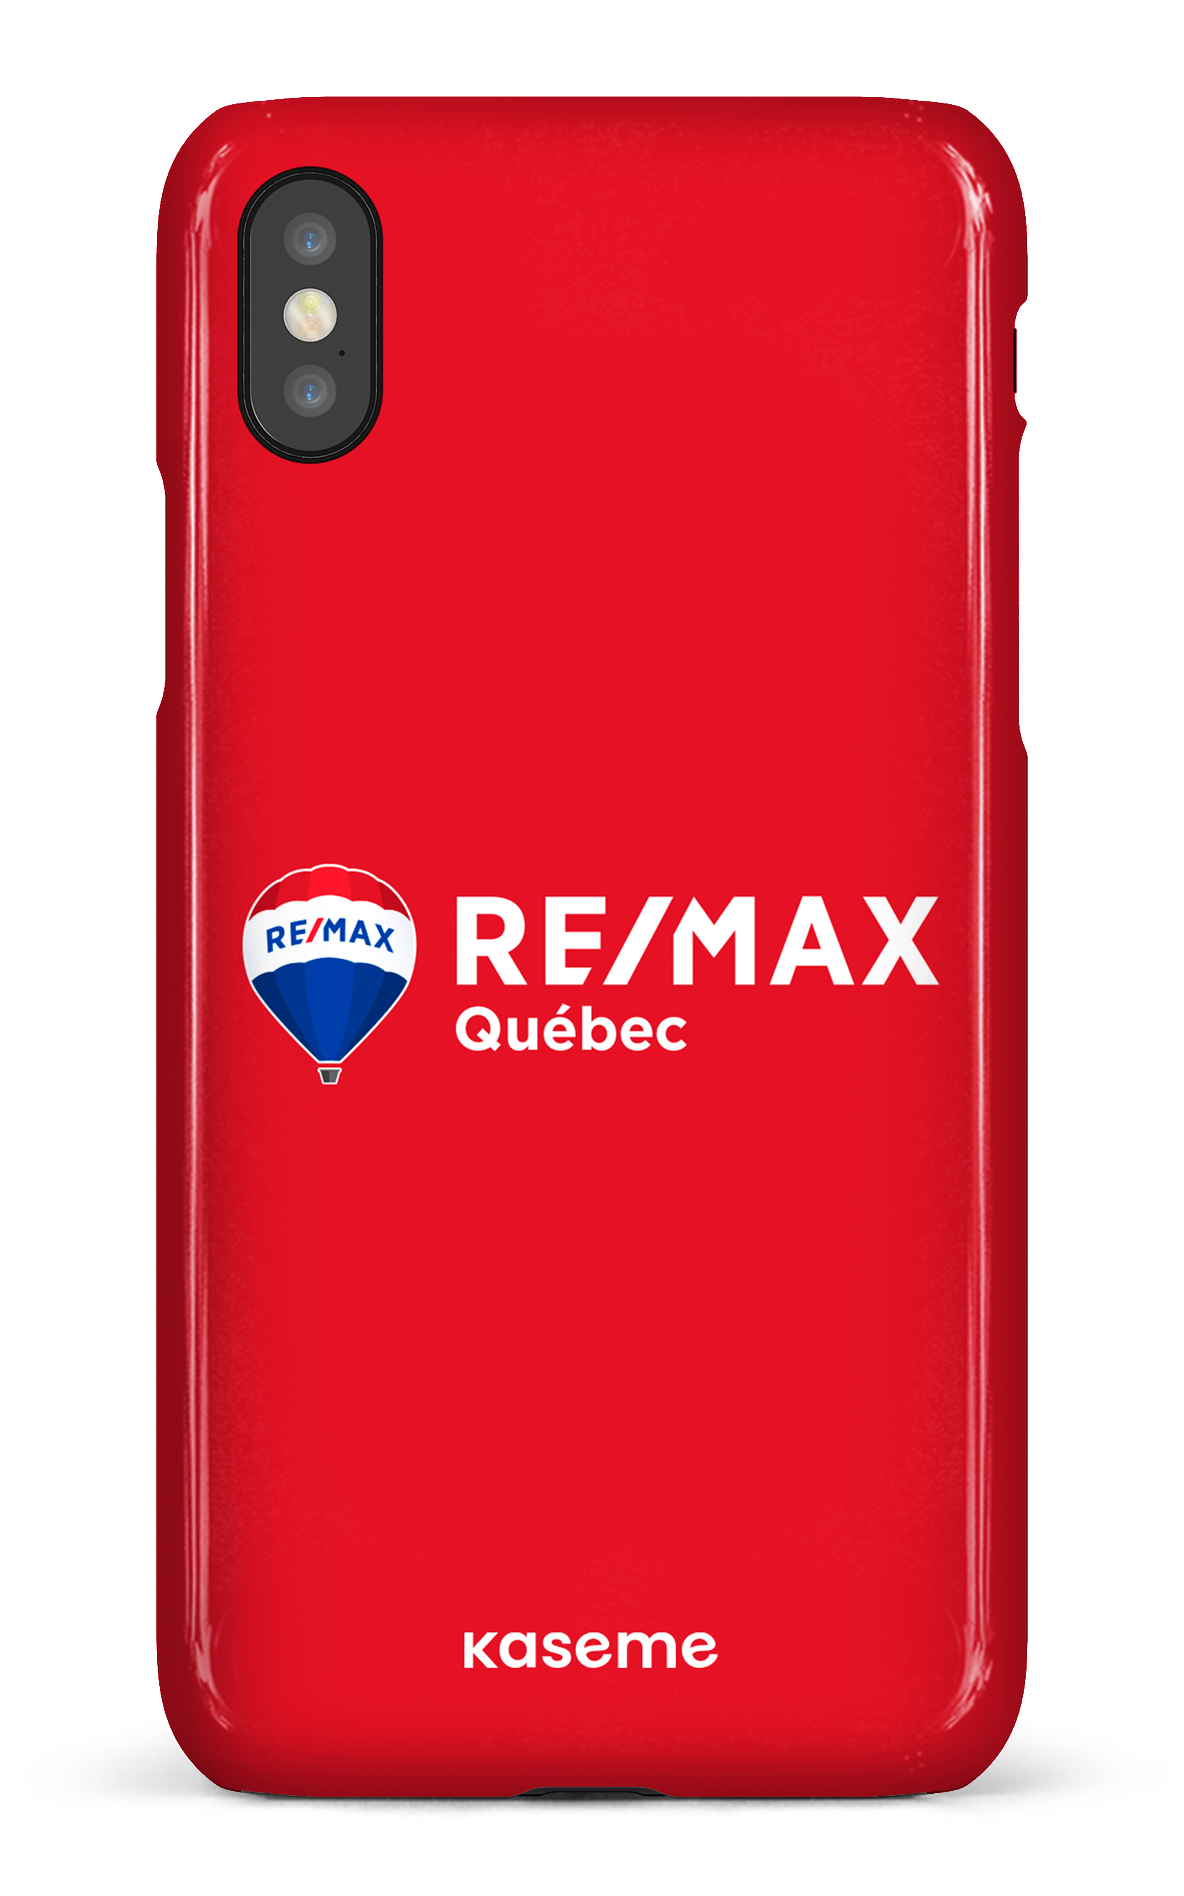 Remax Québec Rouge - iPhone X/Xs